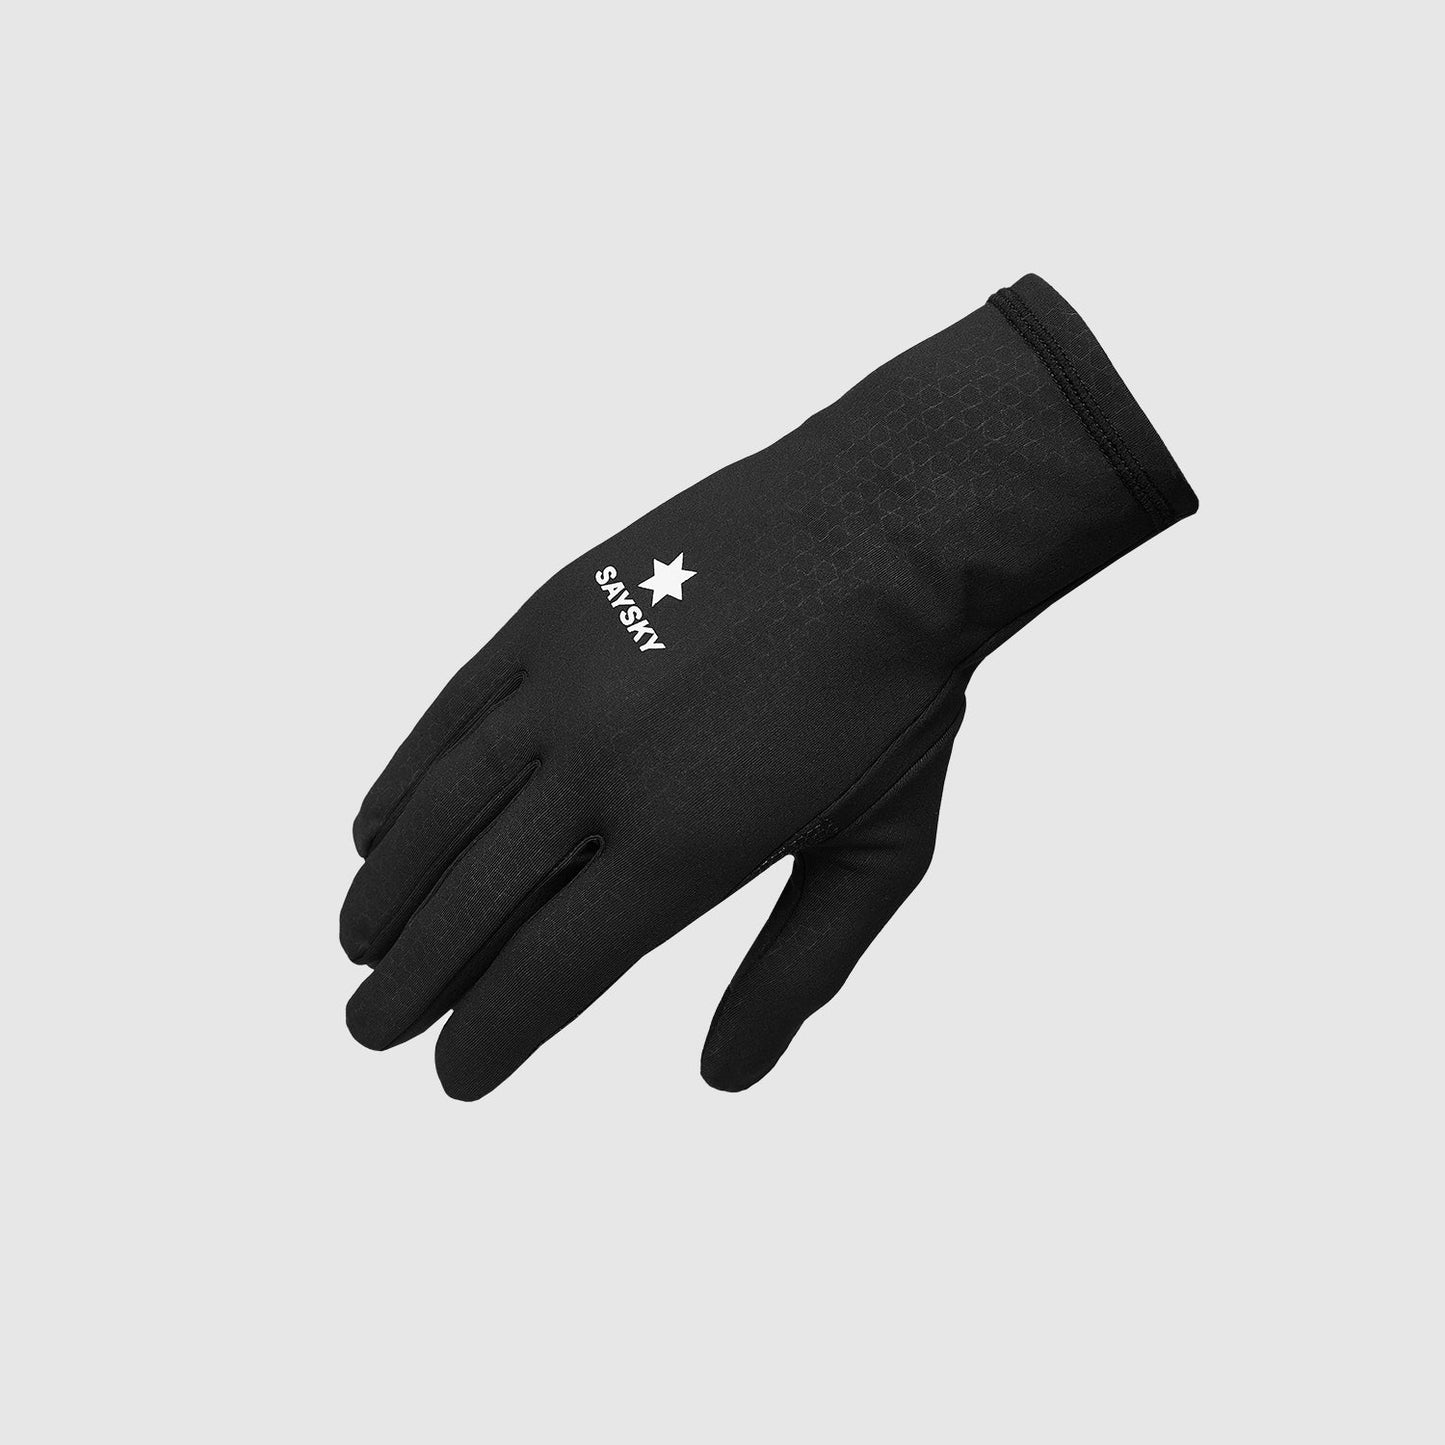 ランニンググローブ XMAGL04c901 Combat Gloves - Black [ユニセックス]